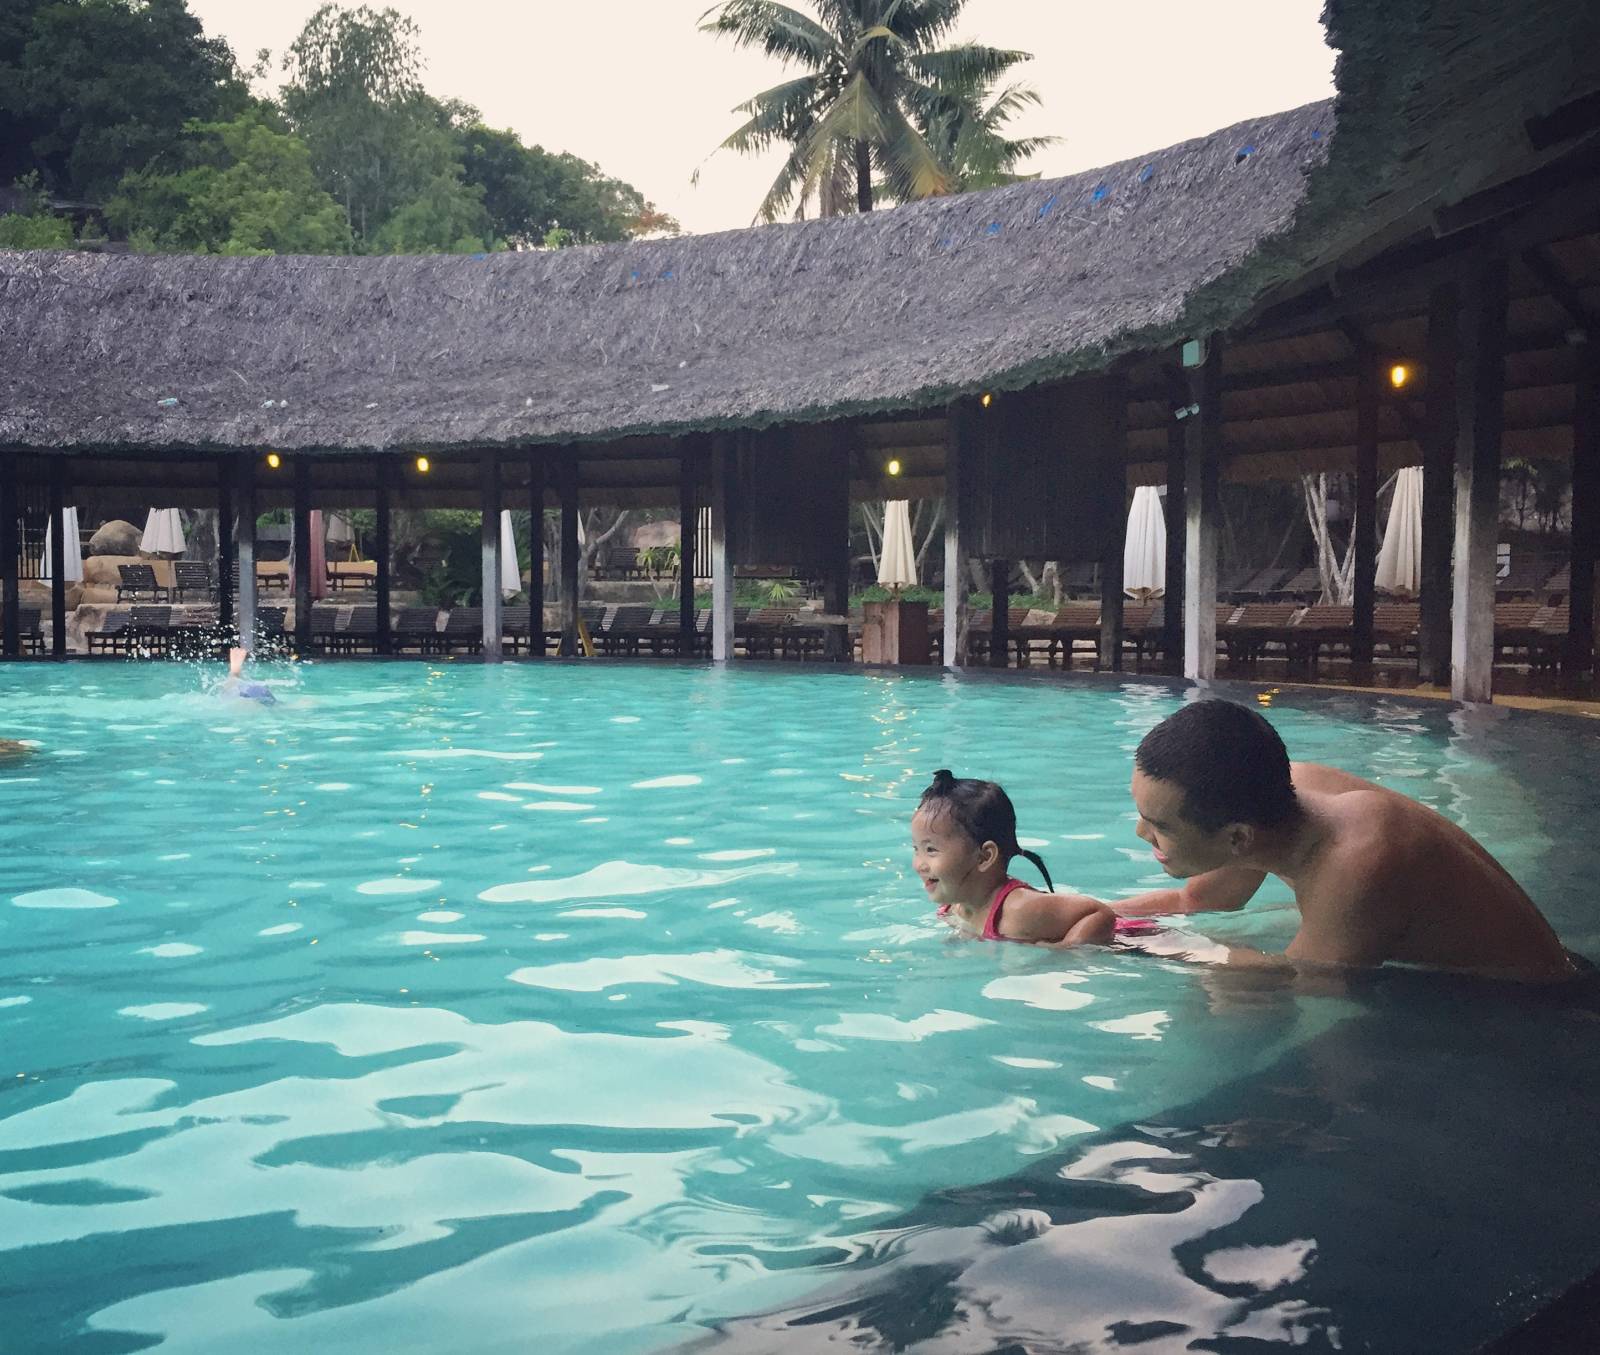 Trải nghiệm Khu bùn khoáng I-Resort – Địa điểm tắm bùn lý tưởng tại Nha Trang